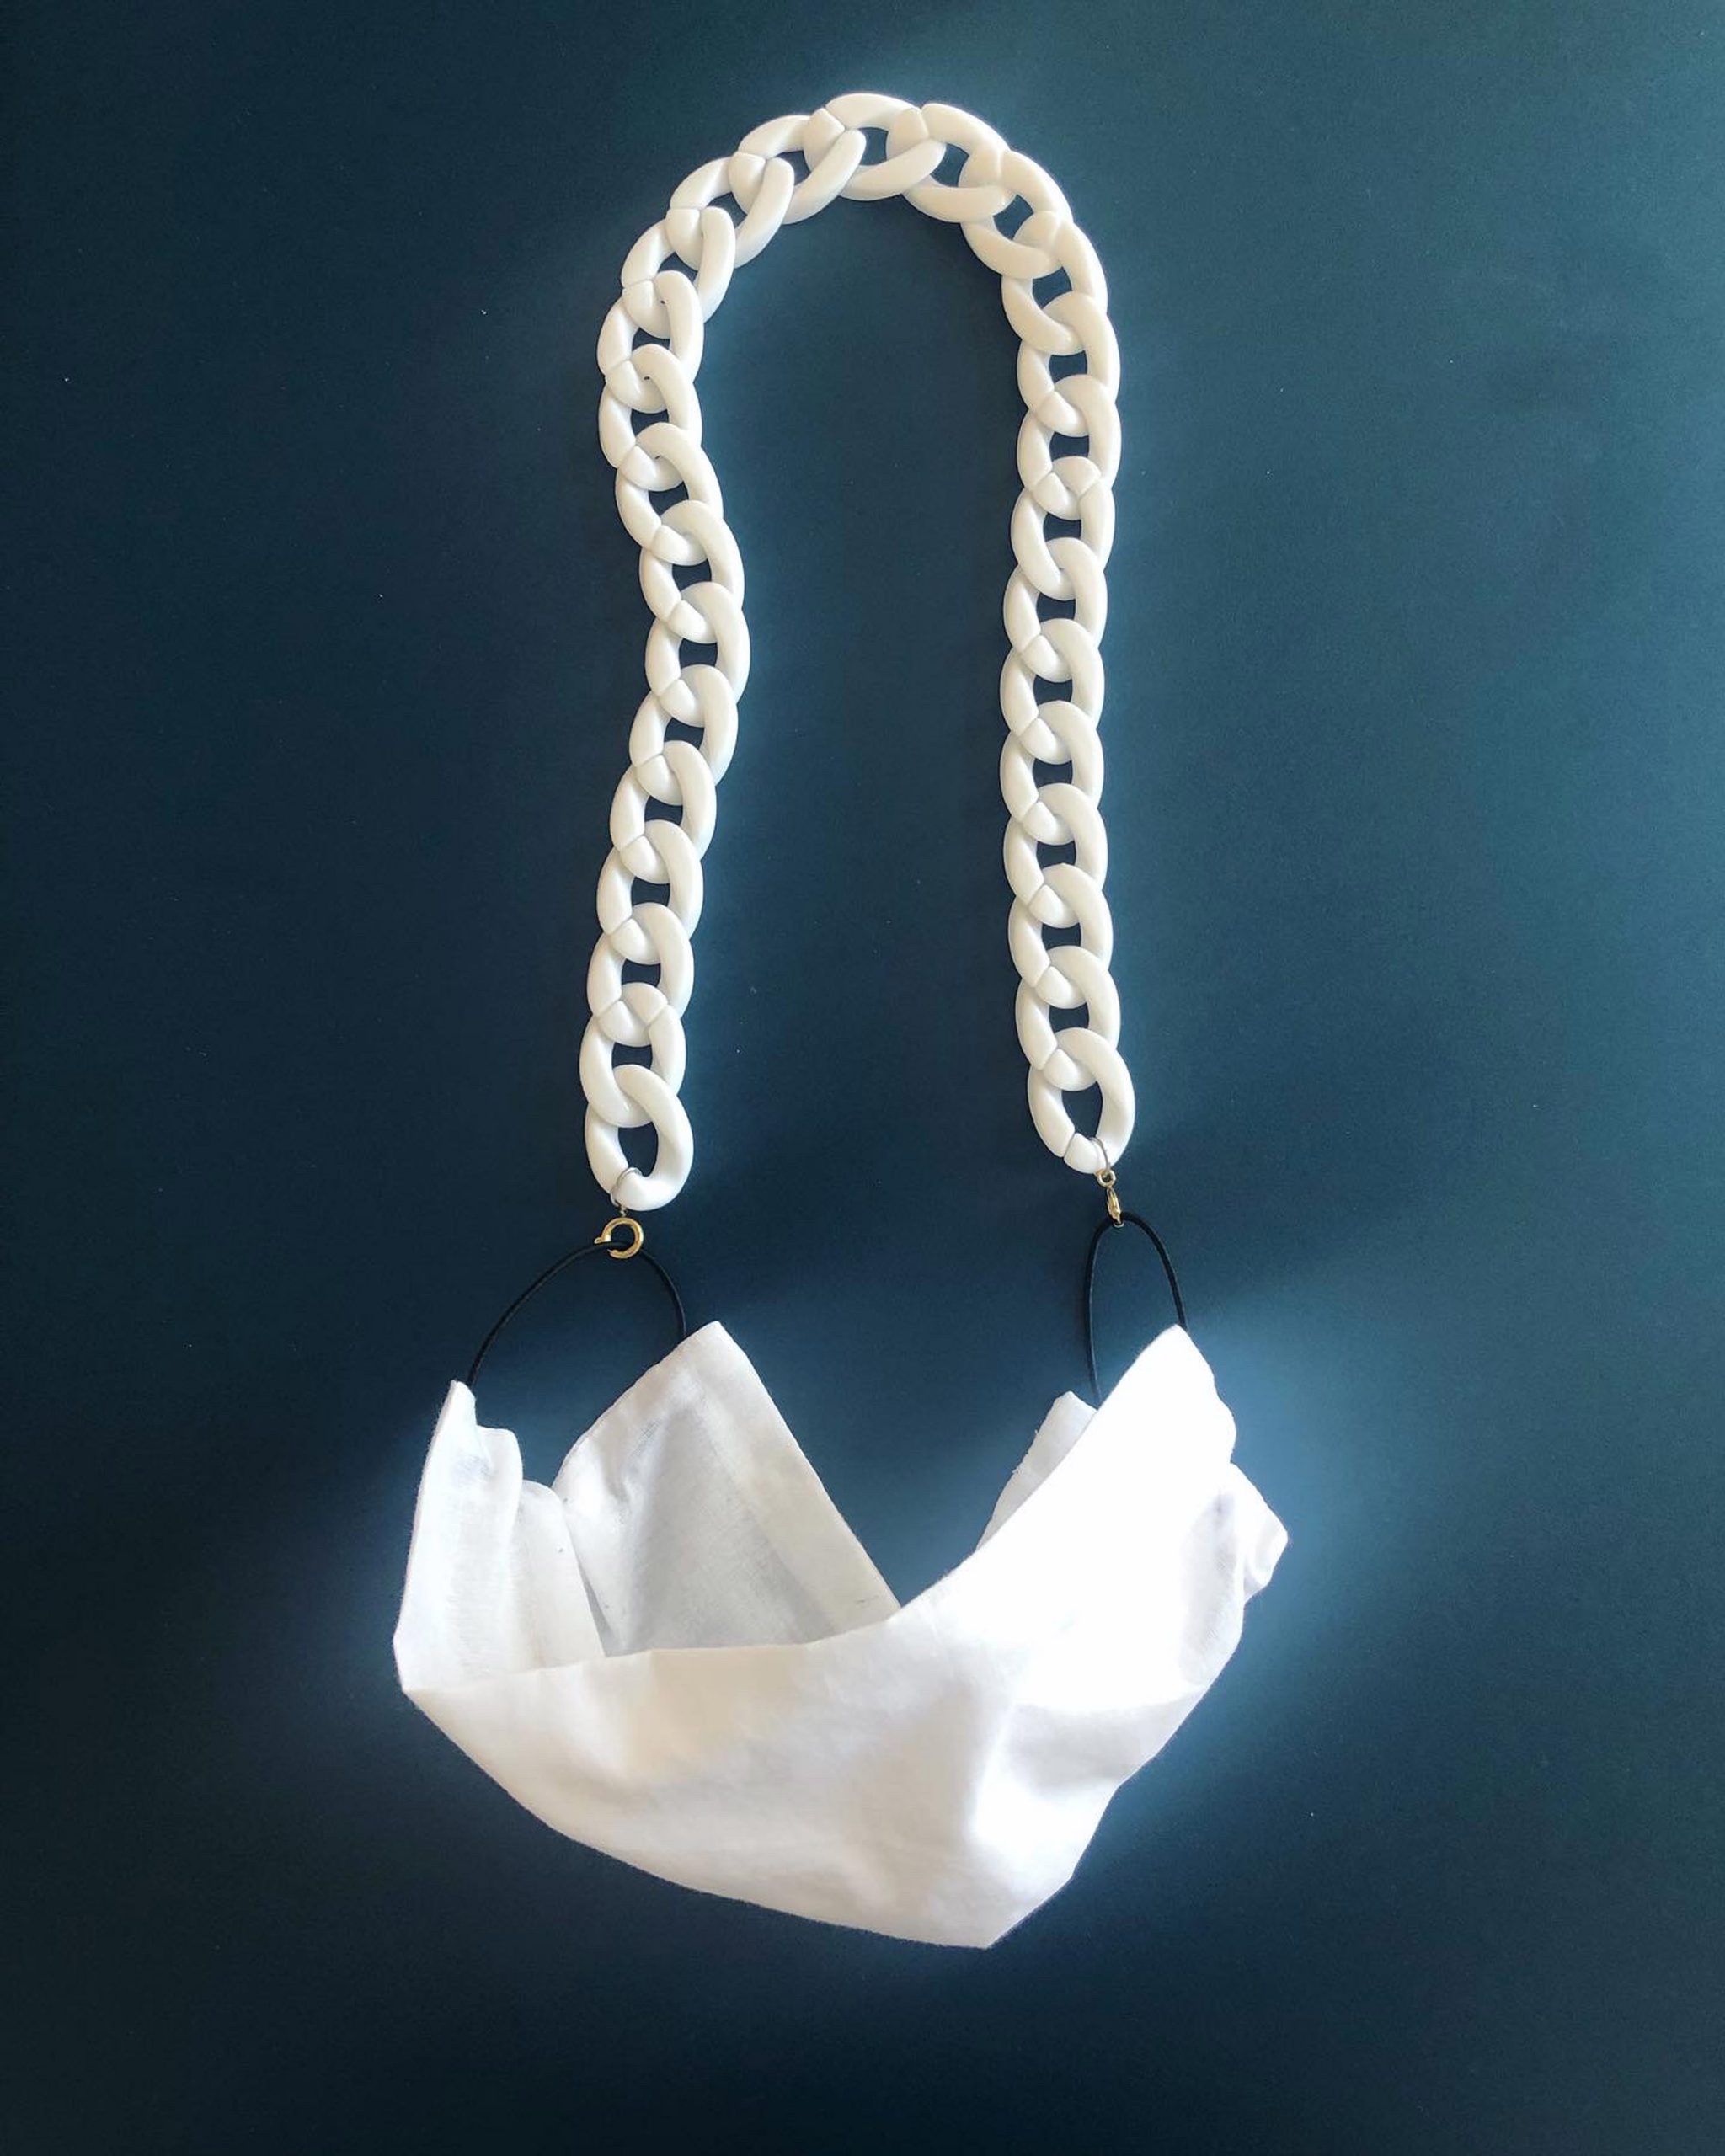 Chained masks by German jewellery designer Saskia Diez